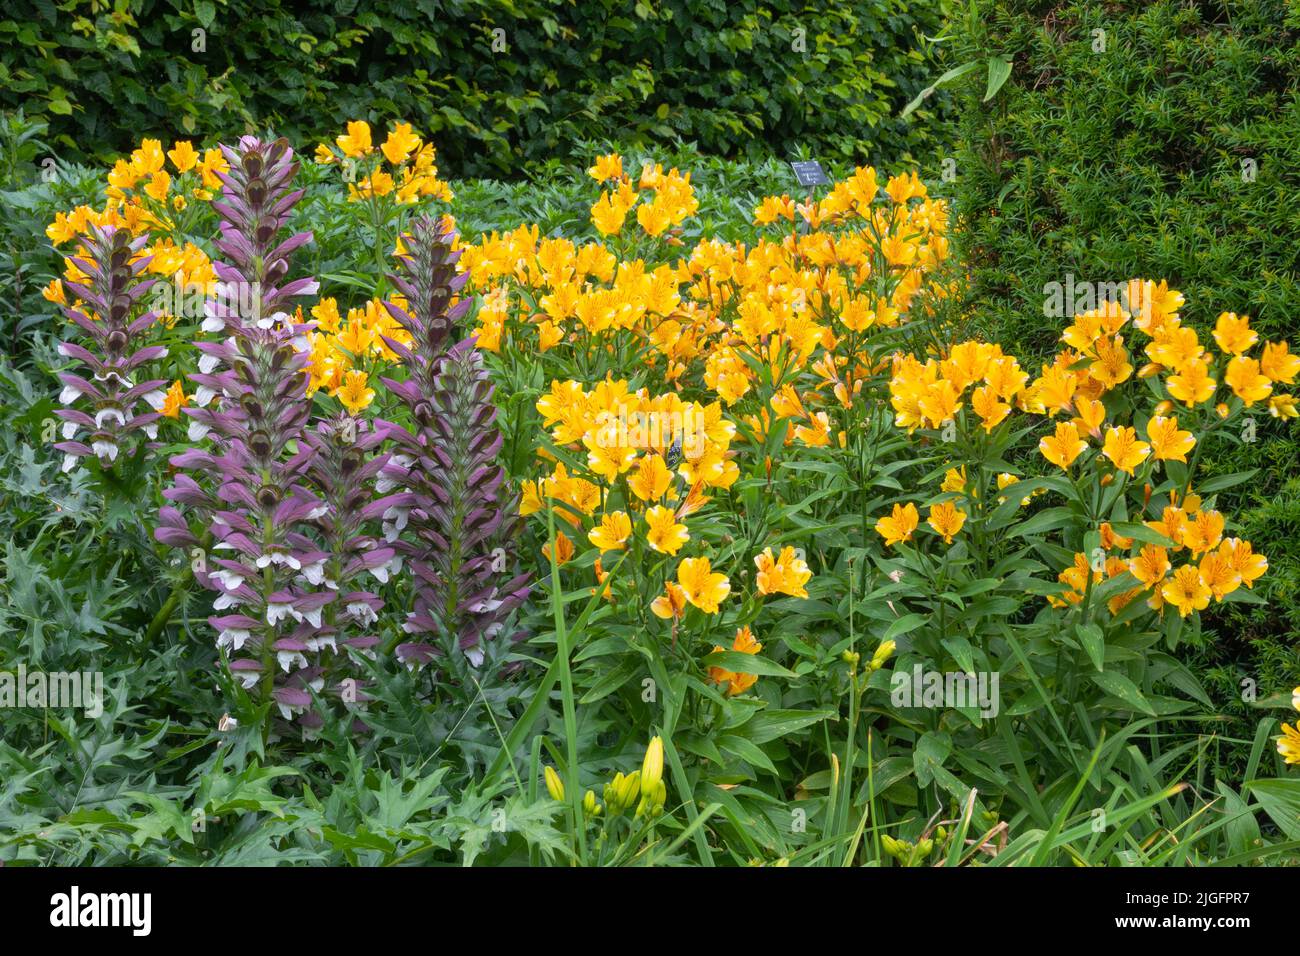 Alstromeria princesa sophie staiello y acanthus spinosus añadiendo color y sustancia al jardín Foto de stock